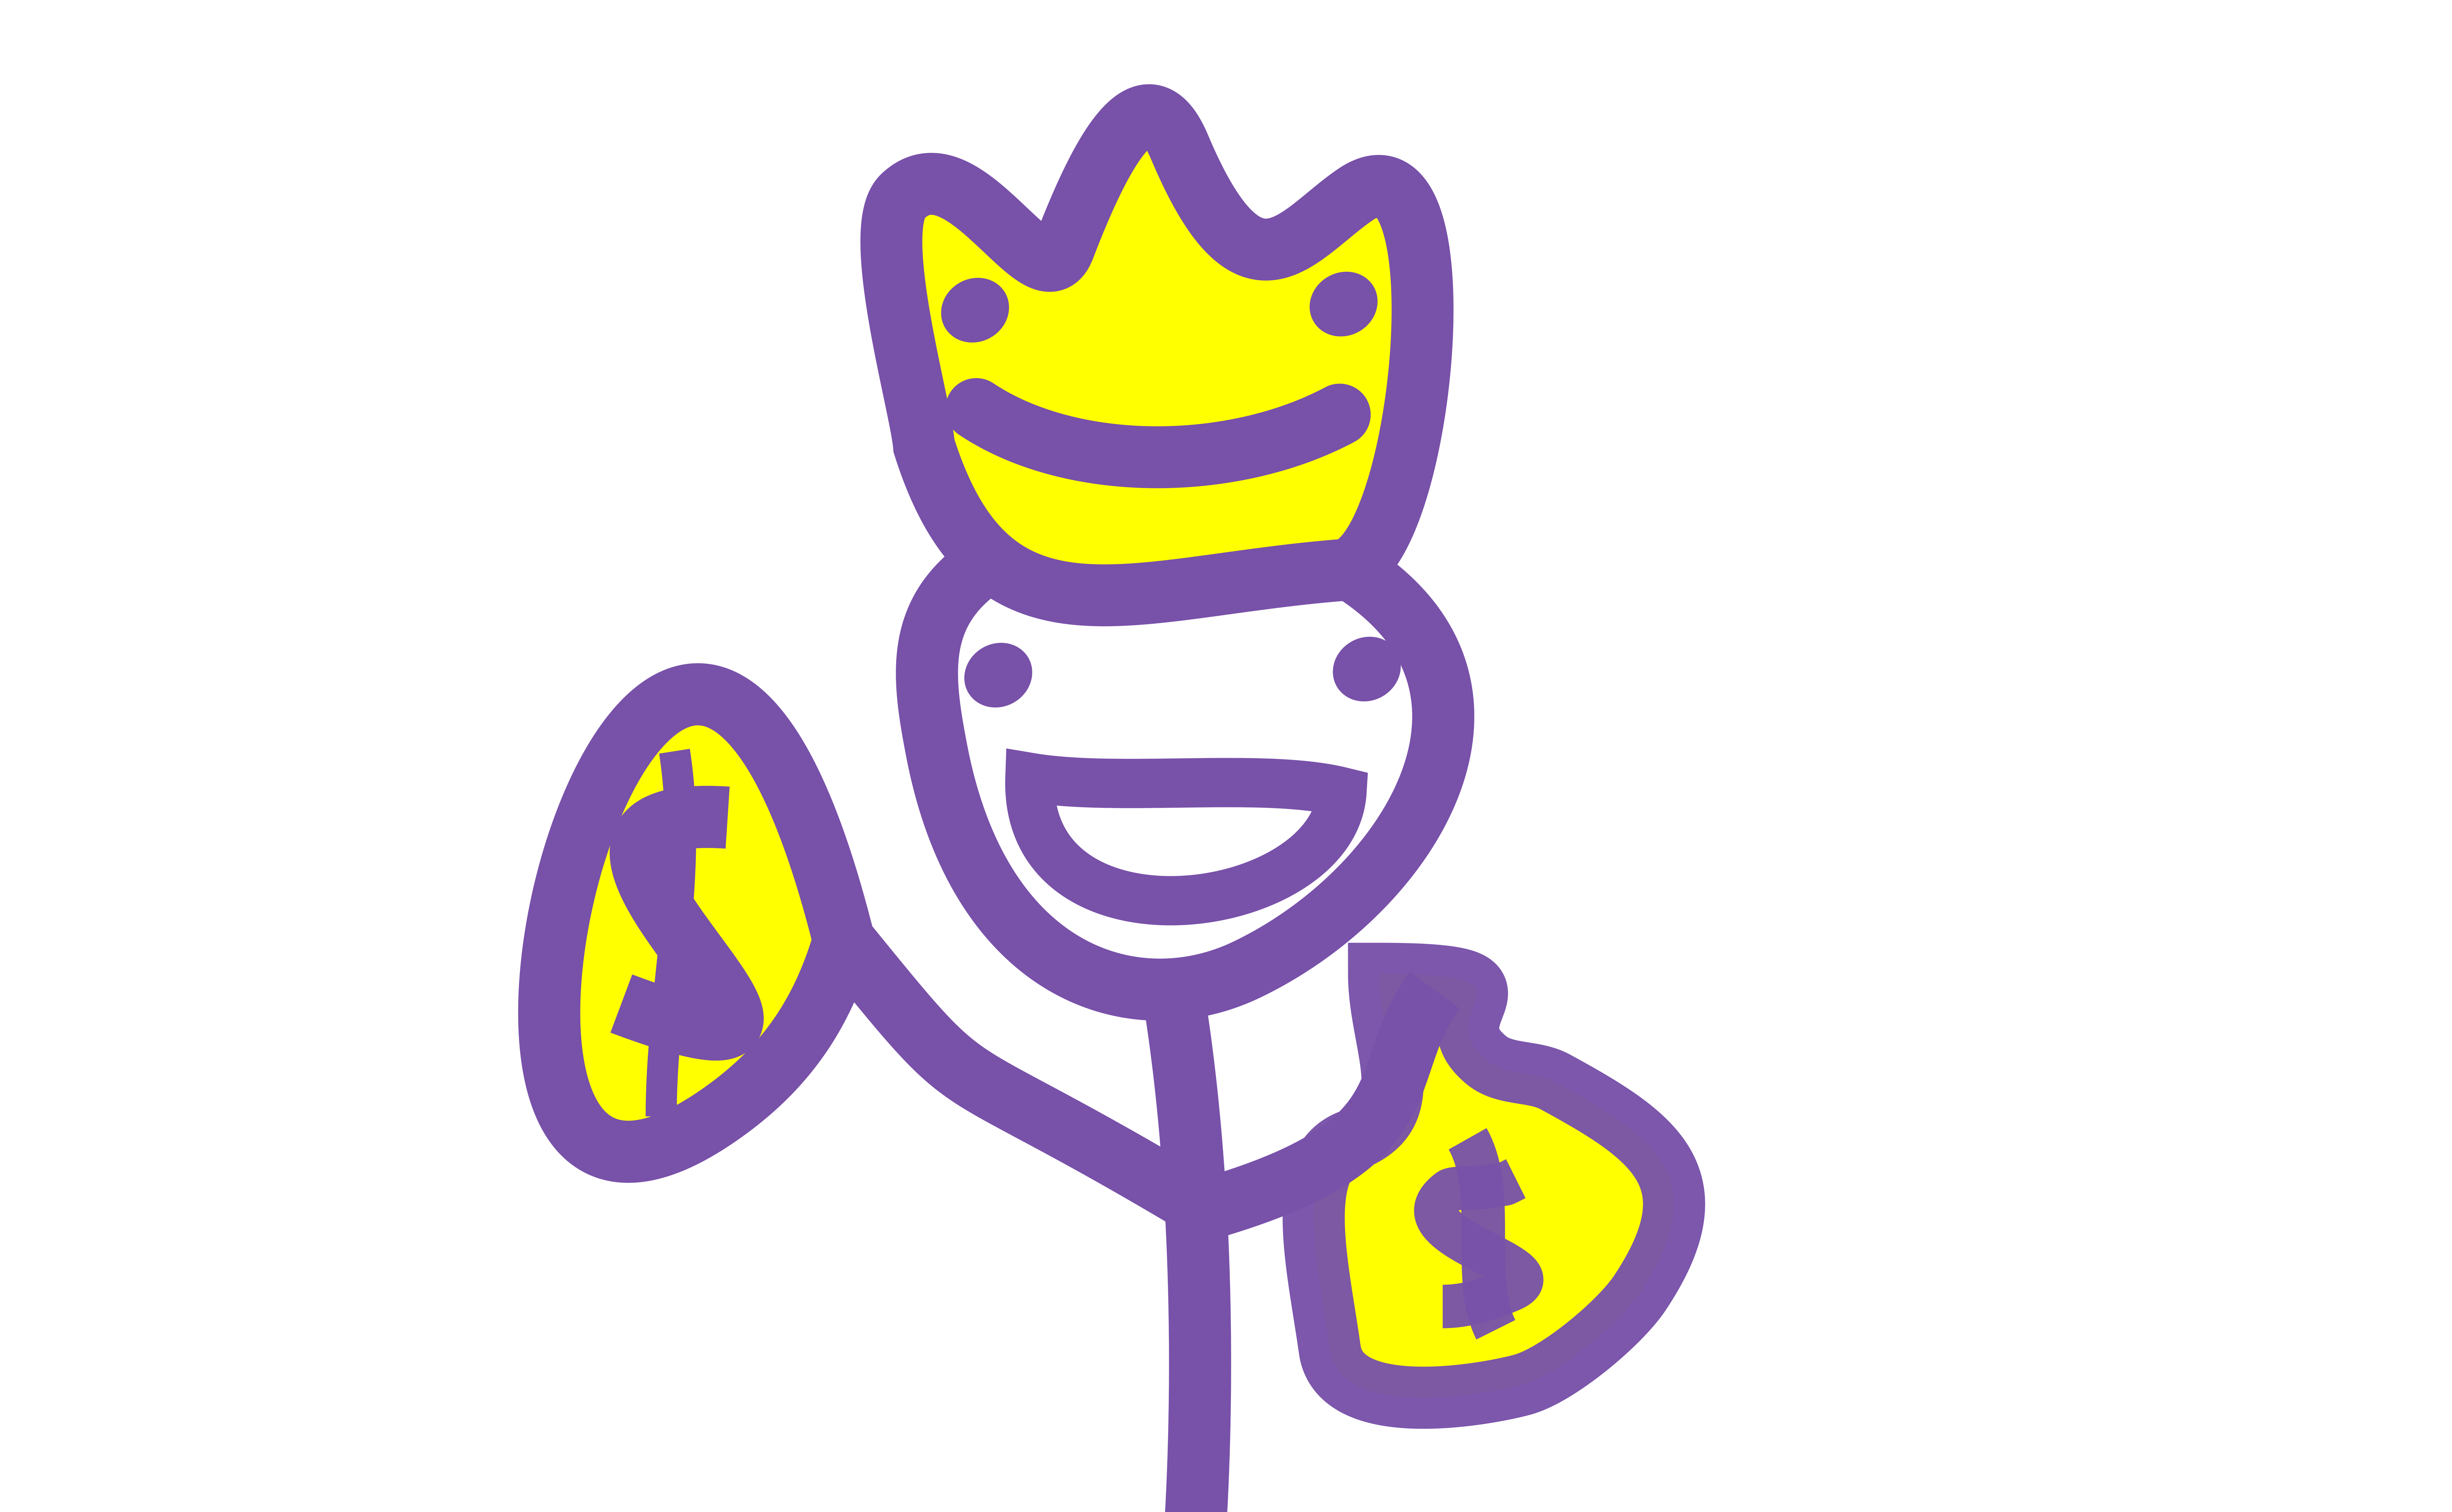 Rich guy wearing crown